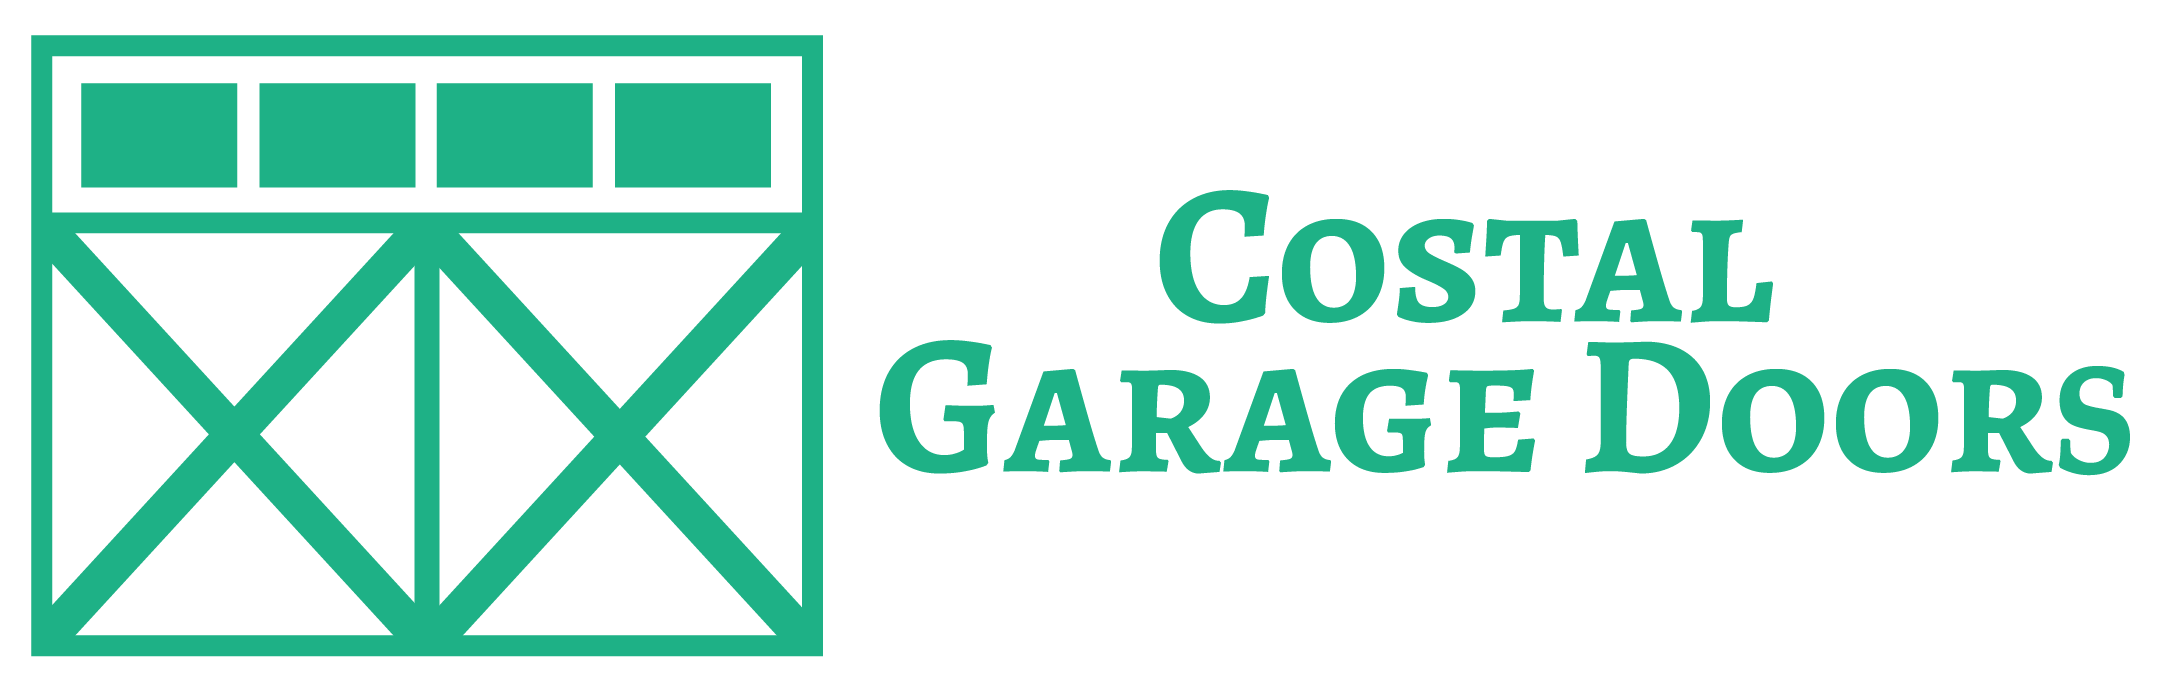 Coastal Garage Doors (josh Rabalais) 01 Copy